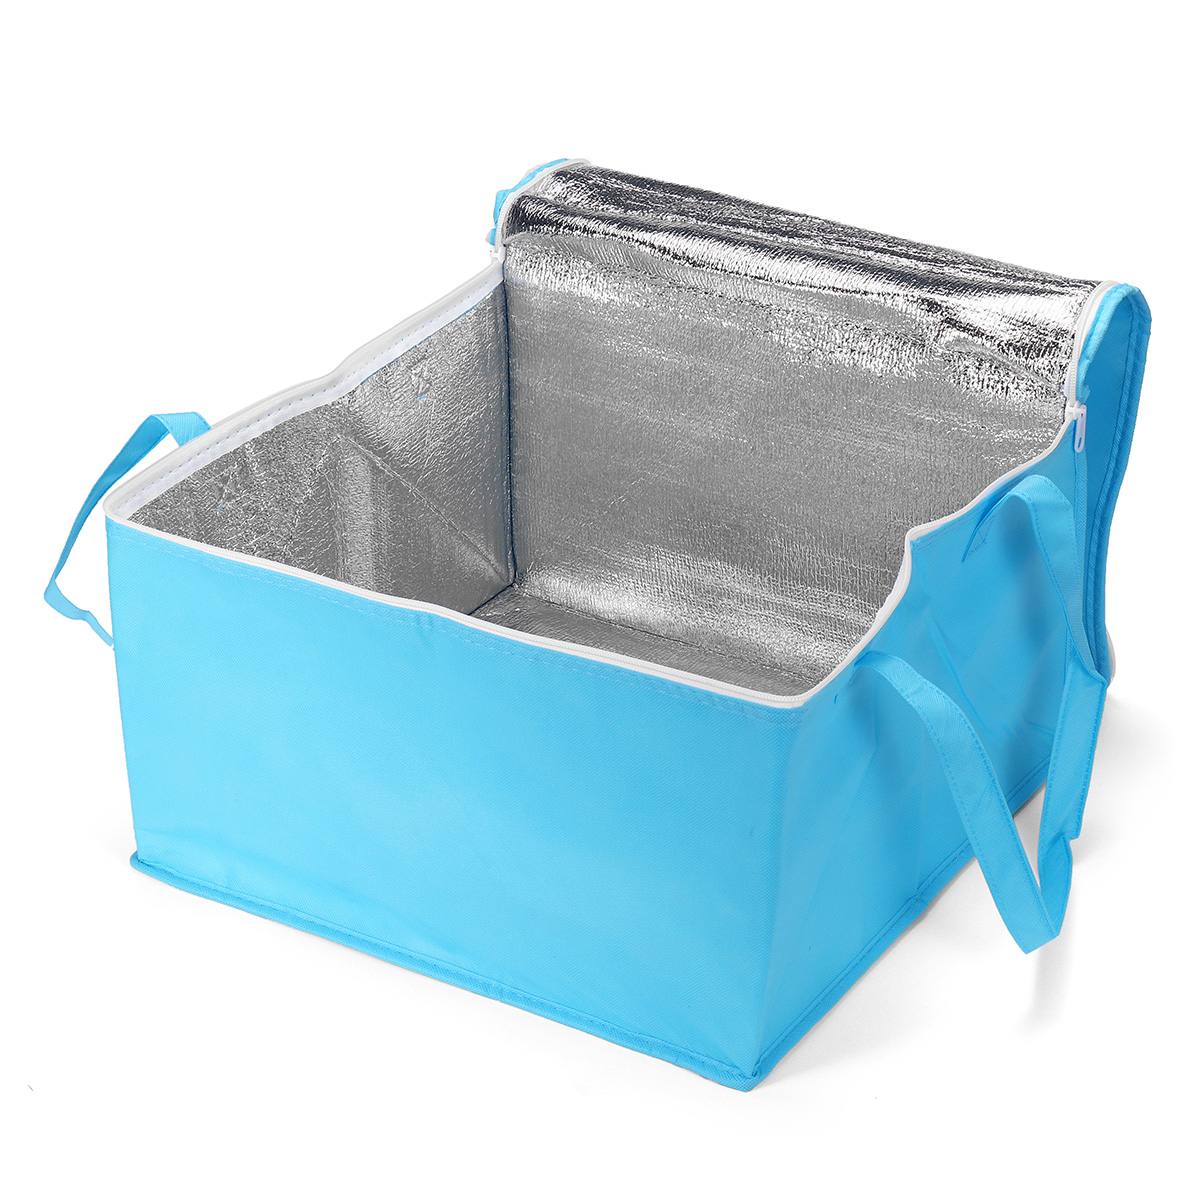 10/12 tommer frokost køletaske isolering folde picnic bærbar ispose mad termisk taske madpose drikkebærer pizza: Himmelblå / 10 tommer